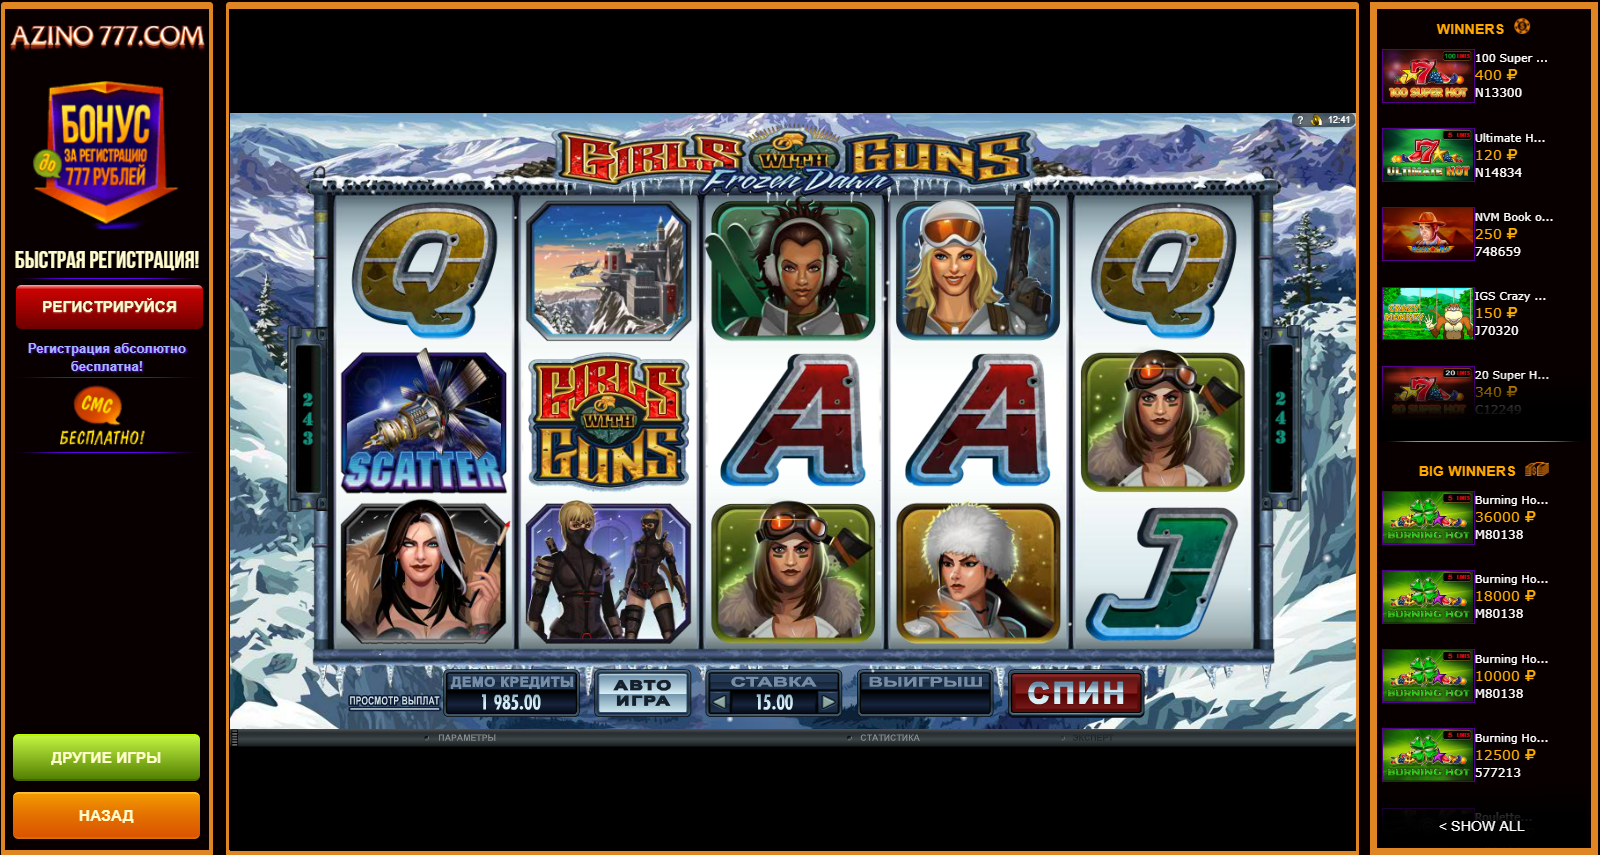 Играть бесплатно и без регистрации в игровые автоматы азино777 зарубежные казино онлайн с бездепозитным бонусом за регистрацию